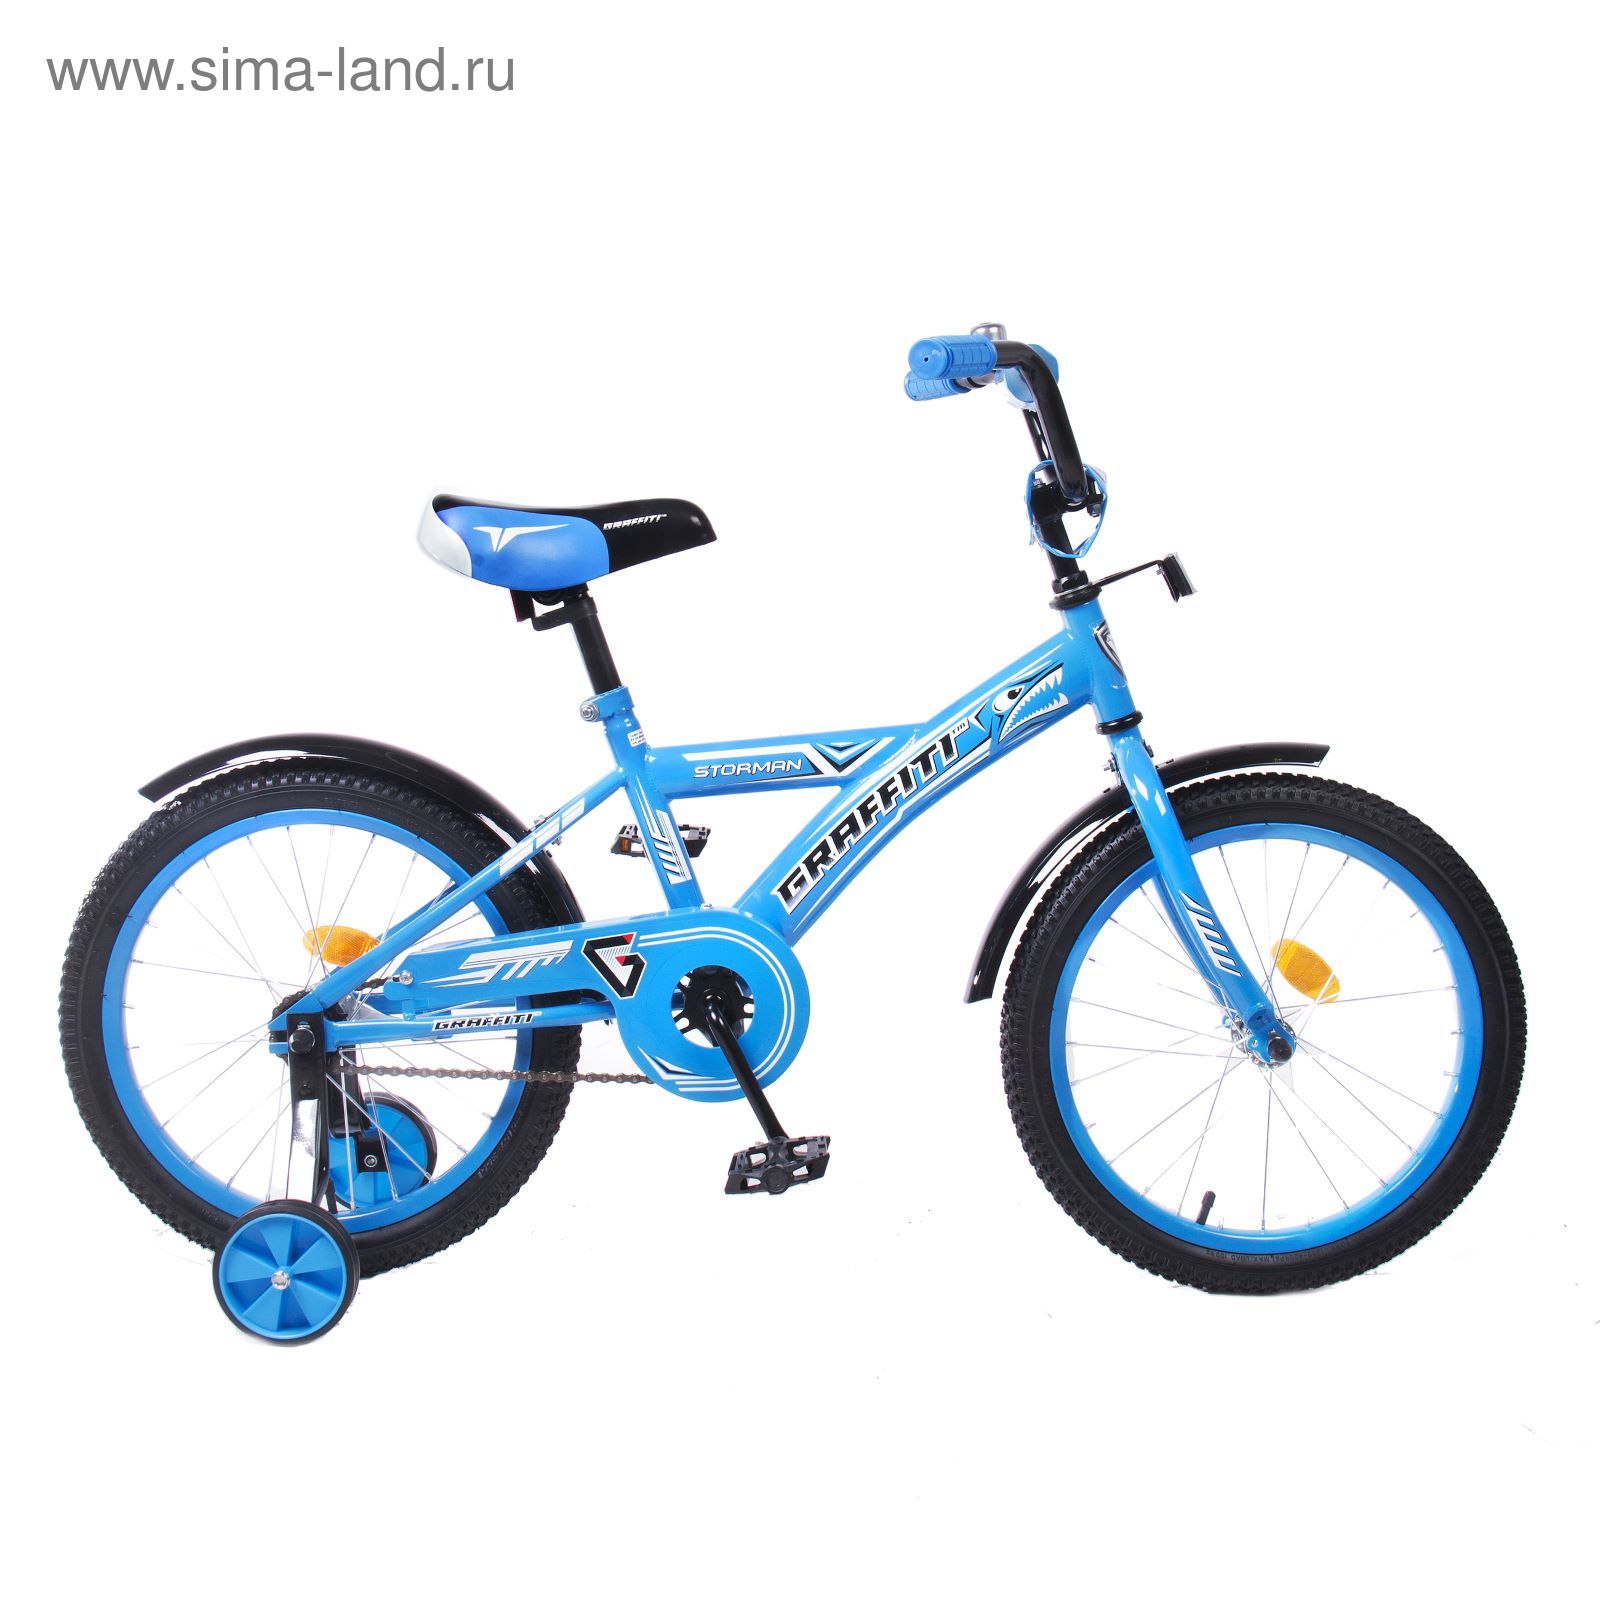 Велосипед 18" GRAFFITI Storman RUS, 2017, цвет синий